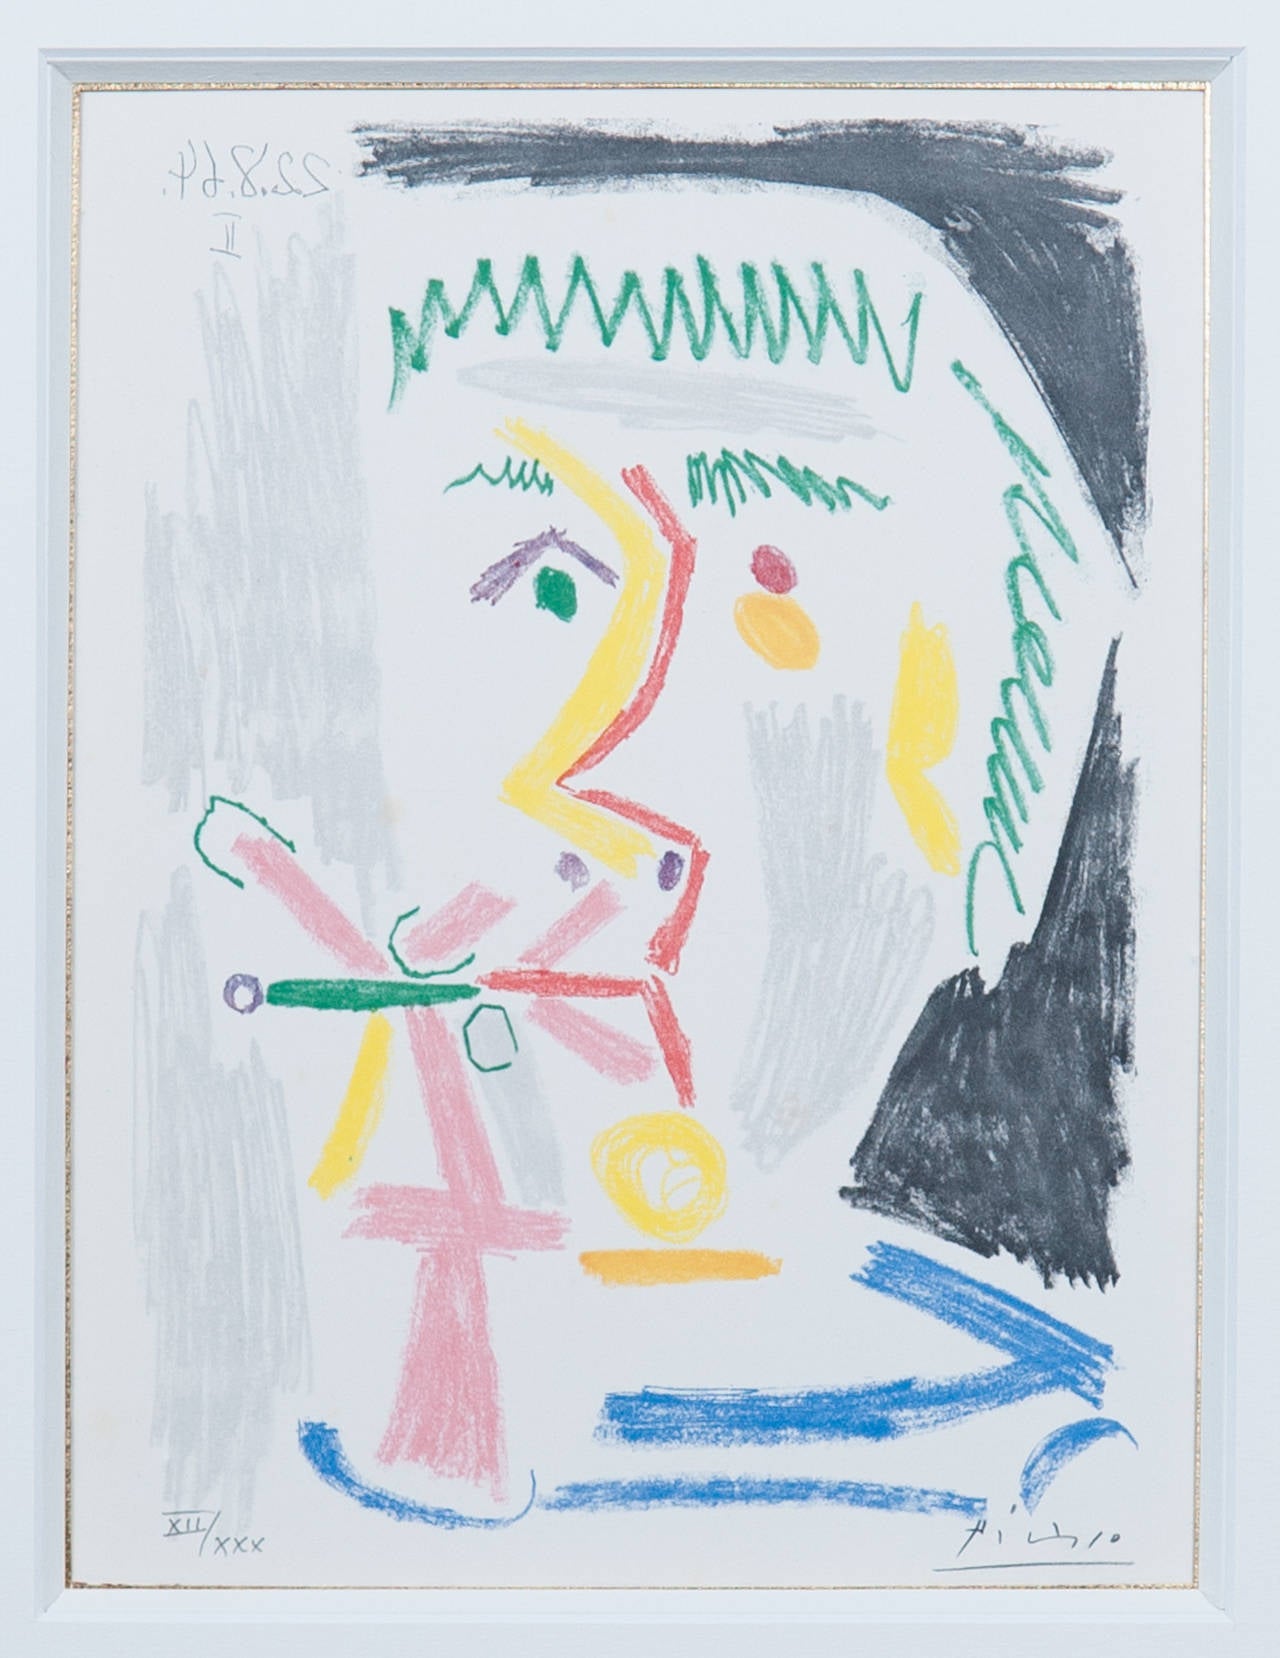 Pablo Picasso Portrait Print - Face of a man XII/XXX